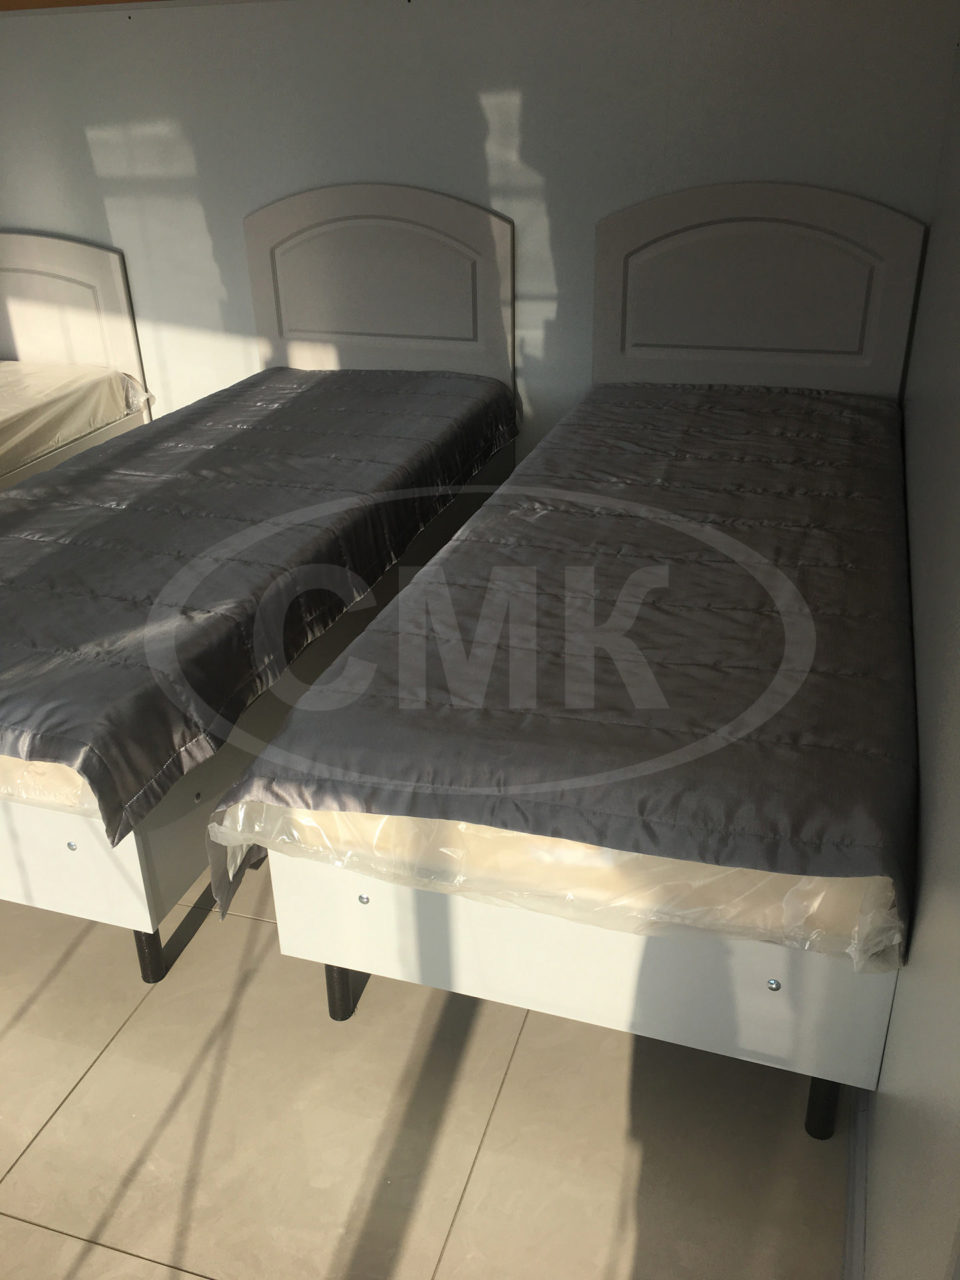 Кровати со спинками МДФ, основание металлический каркас обшитый ЛДСП.